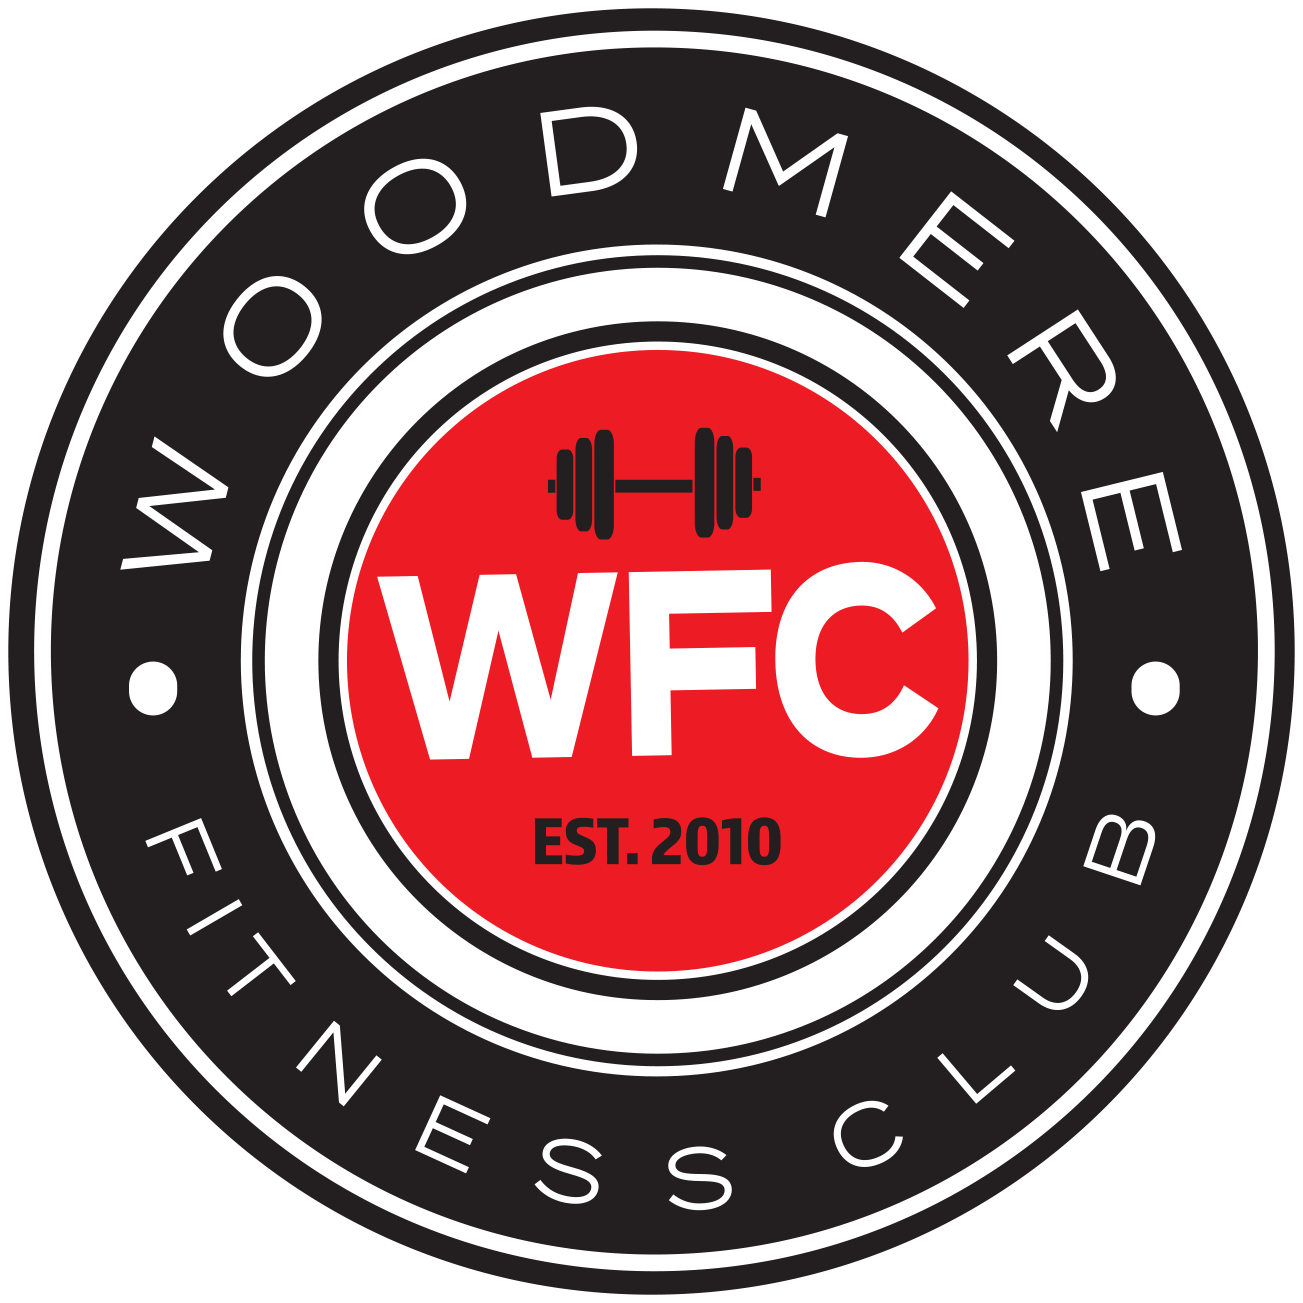 Fitness Club Logo - Woodmere Fitness Club